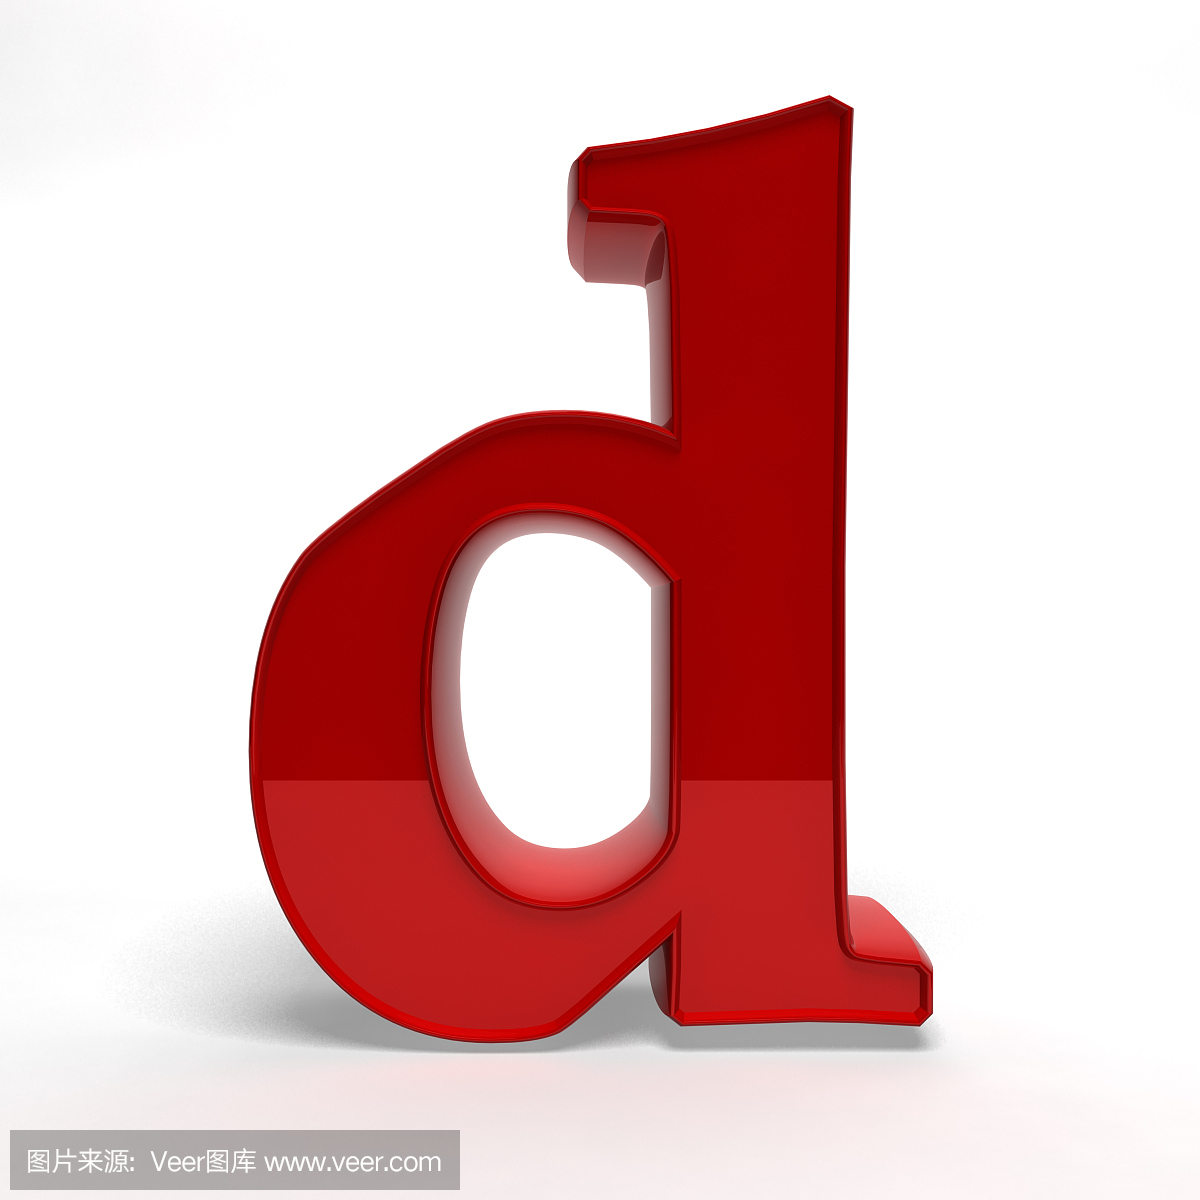 英文字母D,字母D的,D字母,D字母的